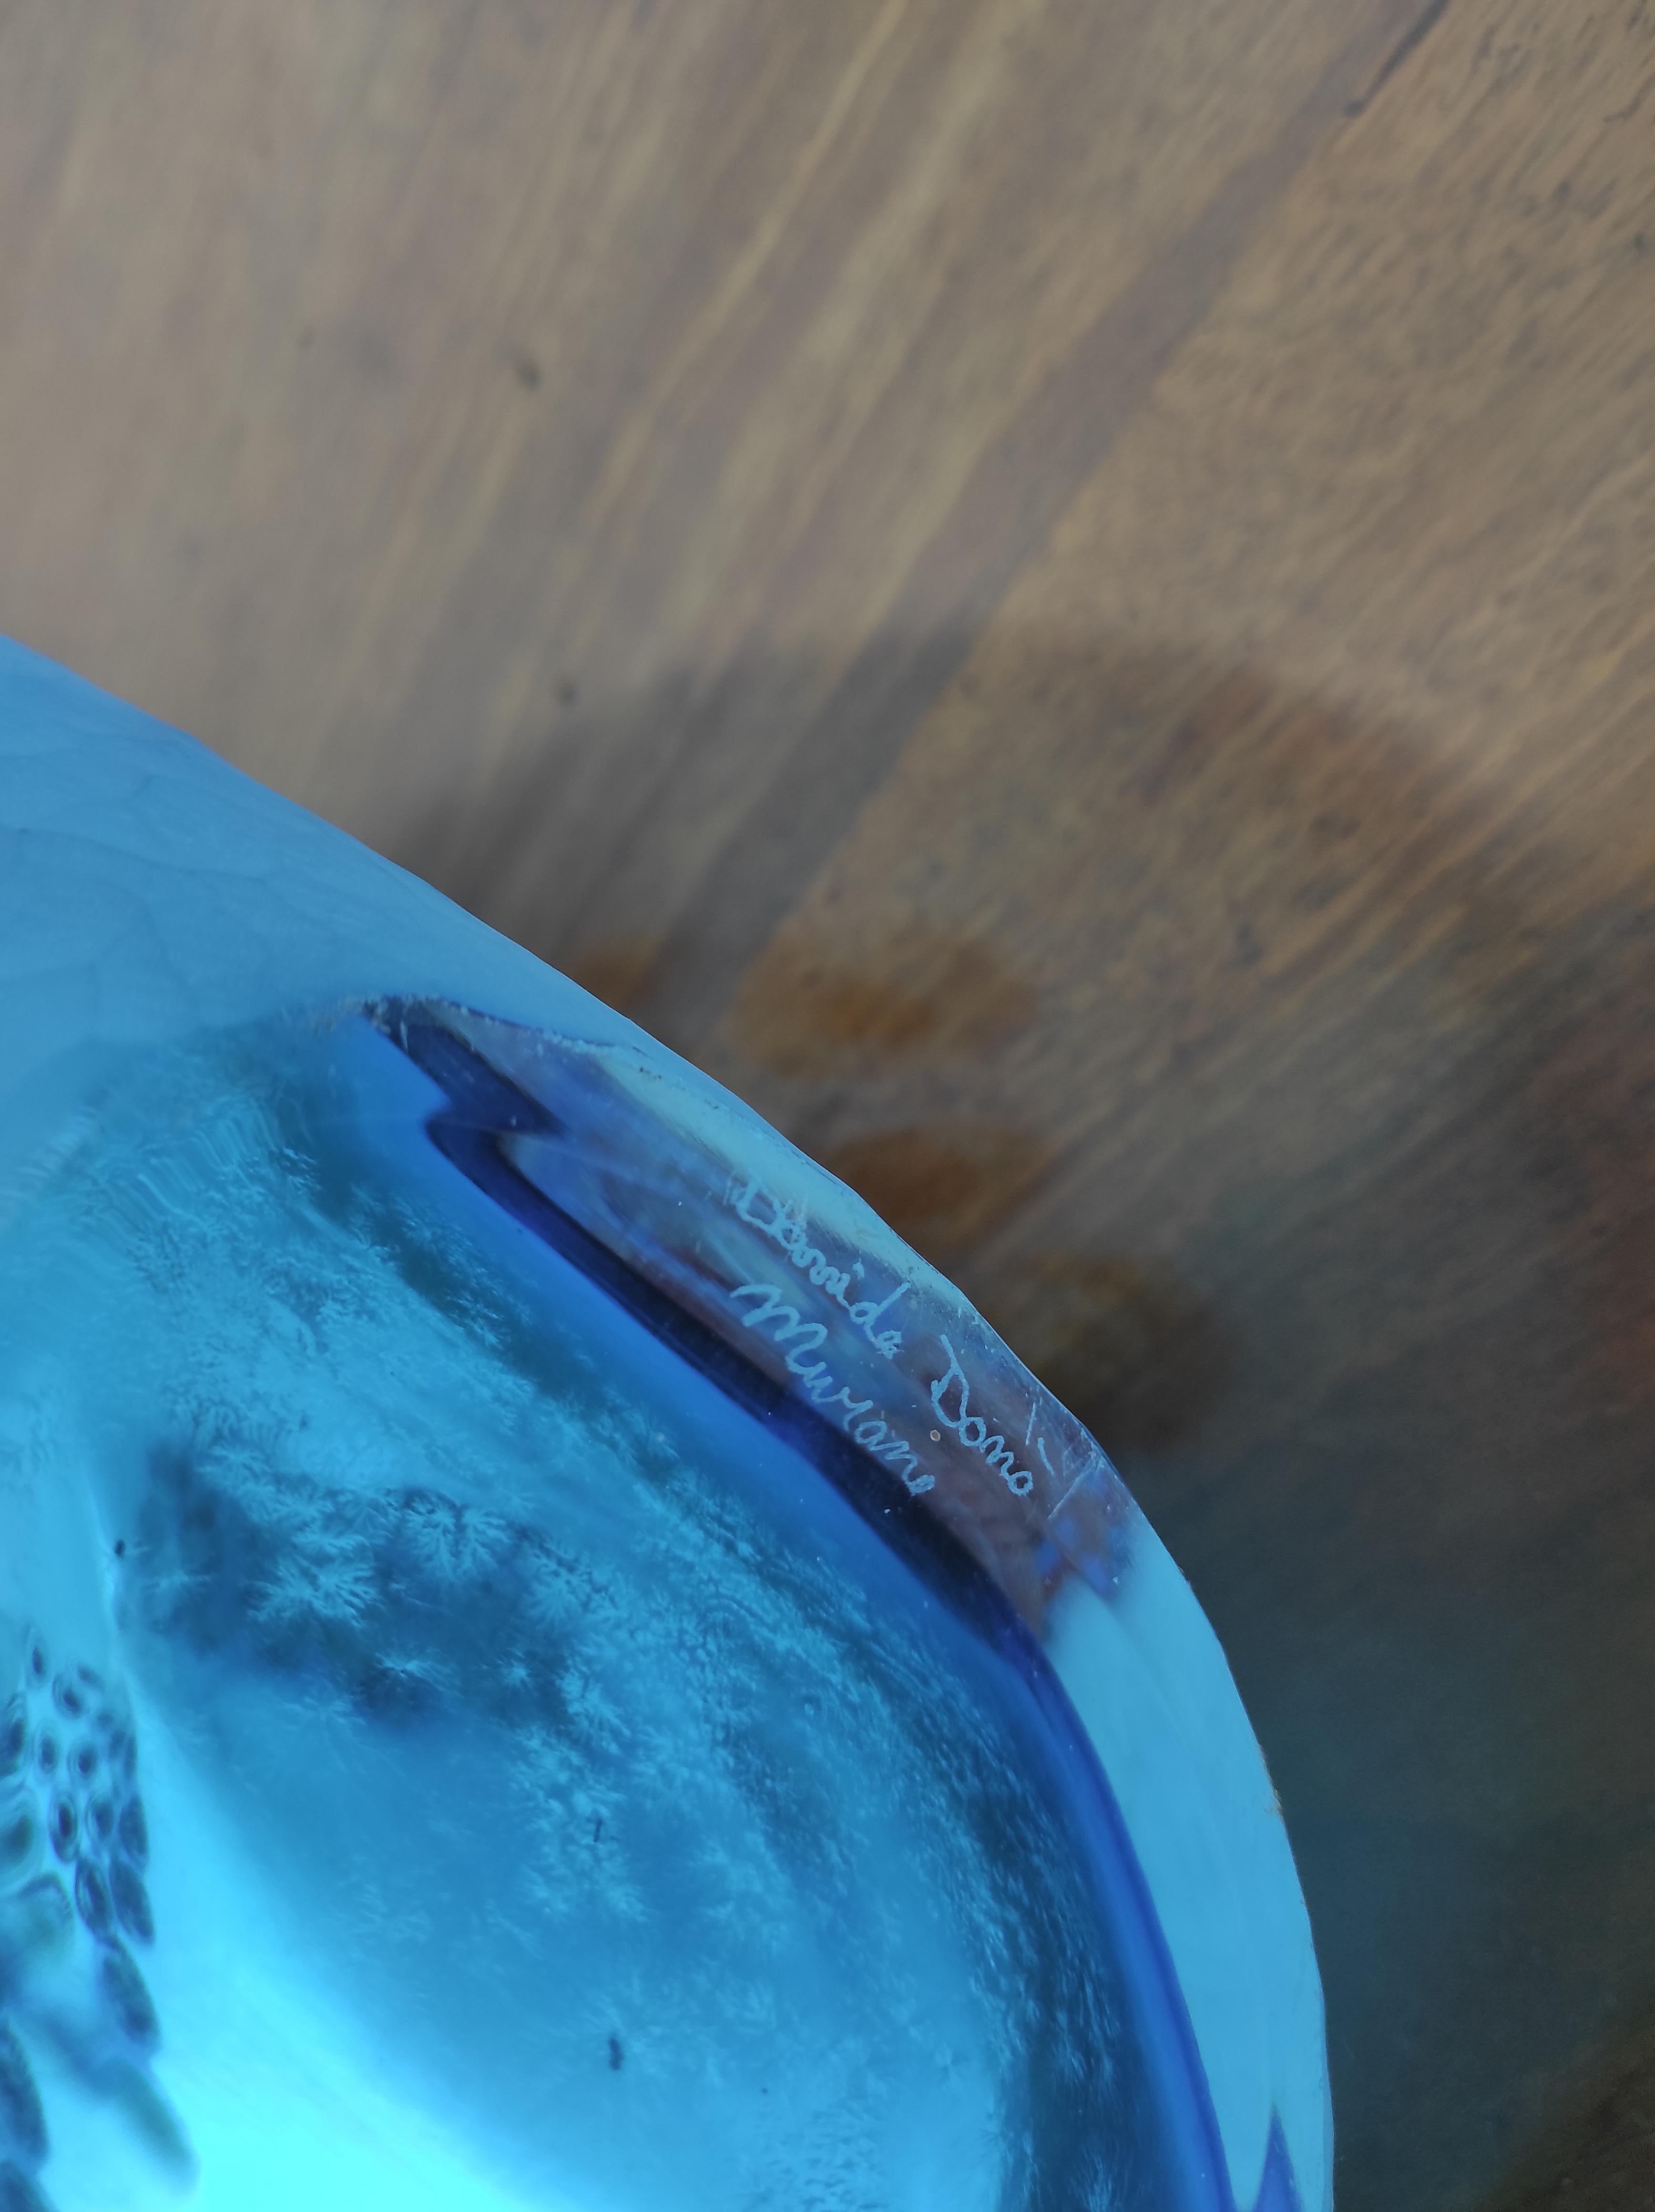 Vaso in vetro soffiato di Murano creato dal maestro Davide Donà
Colore azzurro mare di estrema difficoltà esecutiva per l 'alto rischio di rottura nell' allungamento della parte alta del vaso.
Questo vaso è molto pesante e considerate che è creato